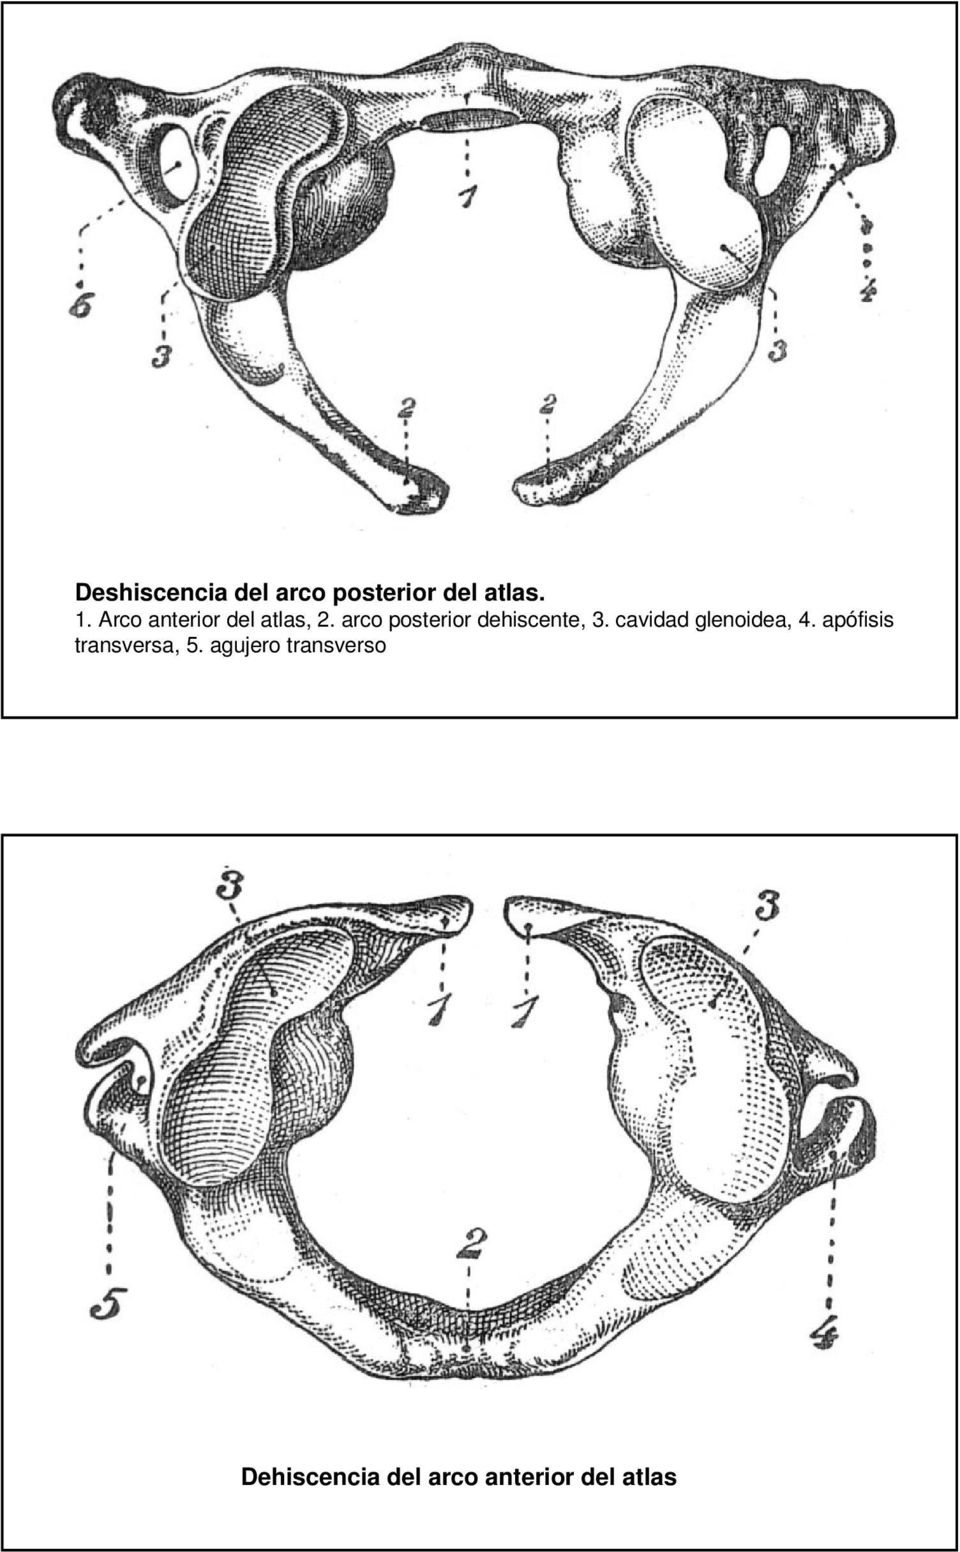 arco posterior dehiscente, 3. cavidad glenoidea, 4.